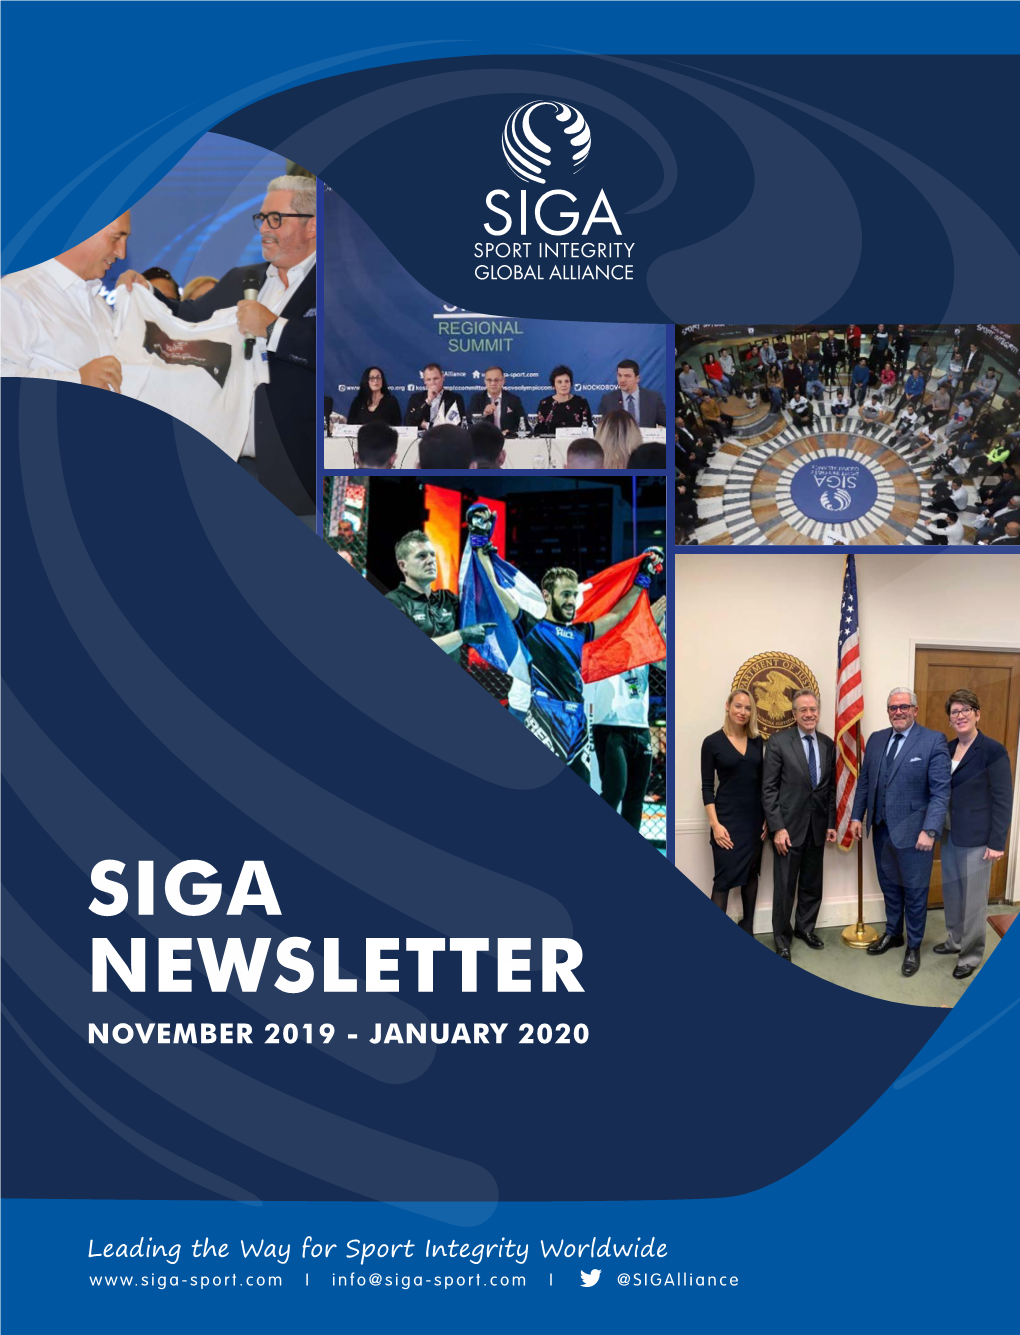 Siga Newsletter November 2019 - January 2020